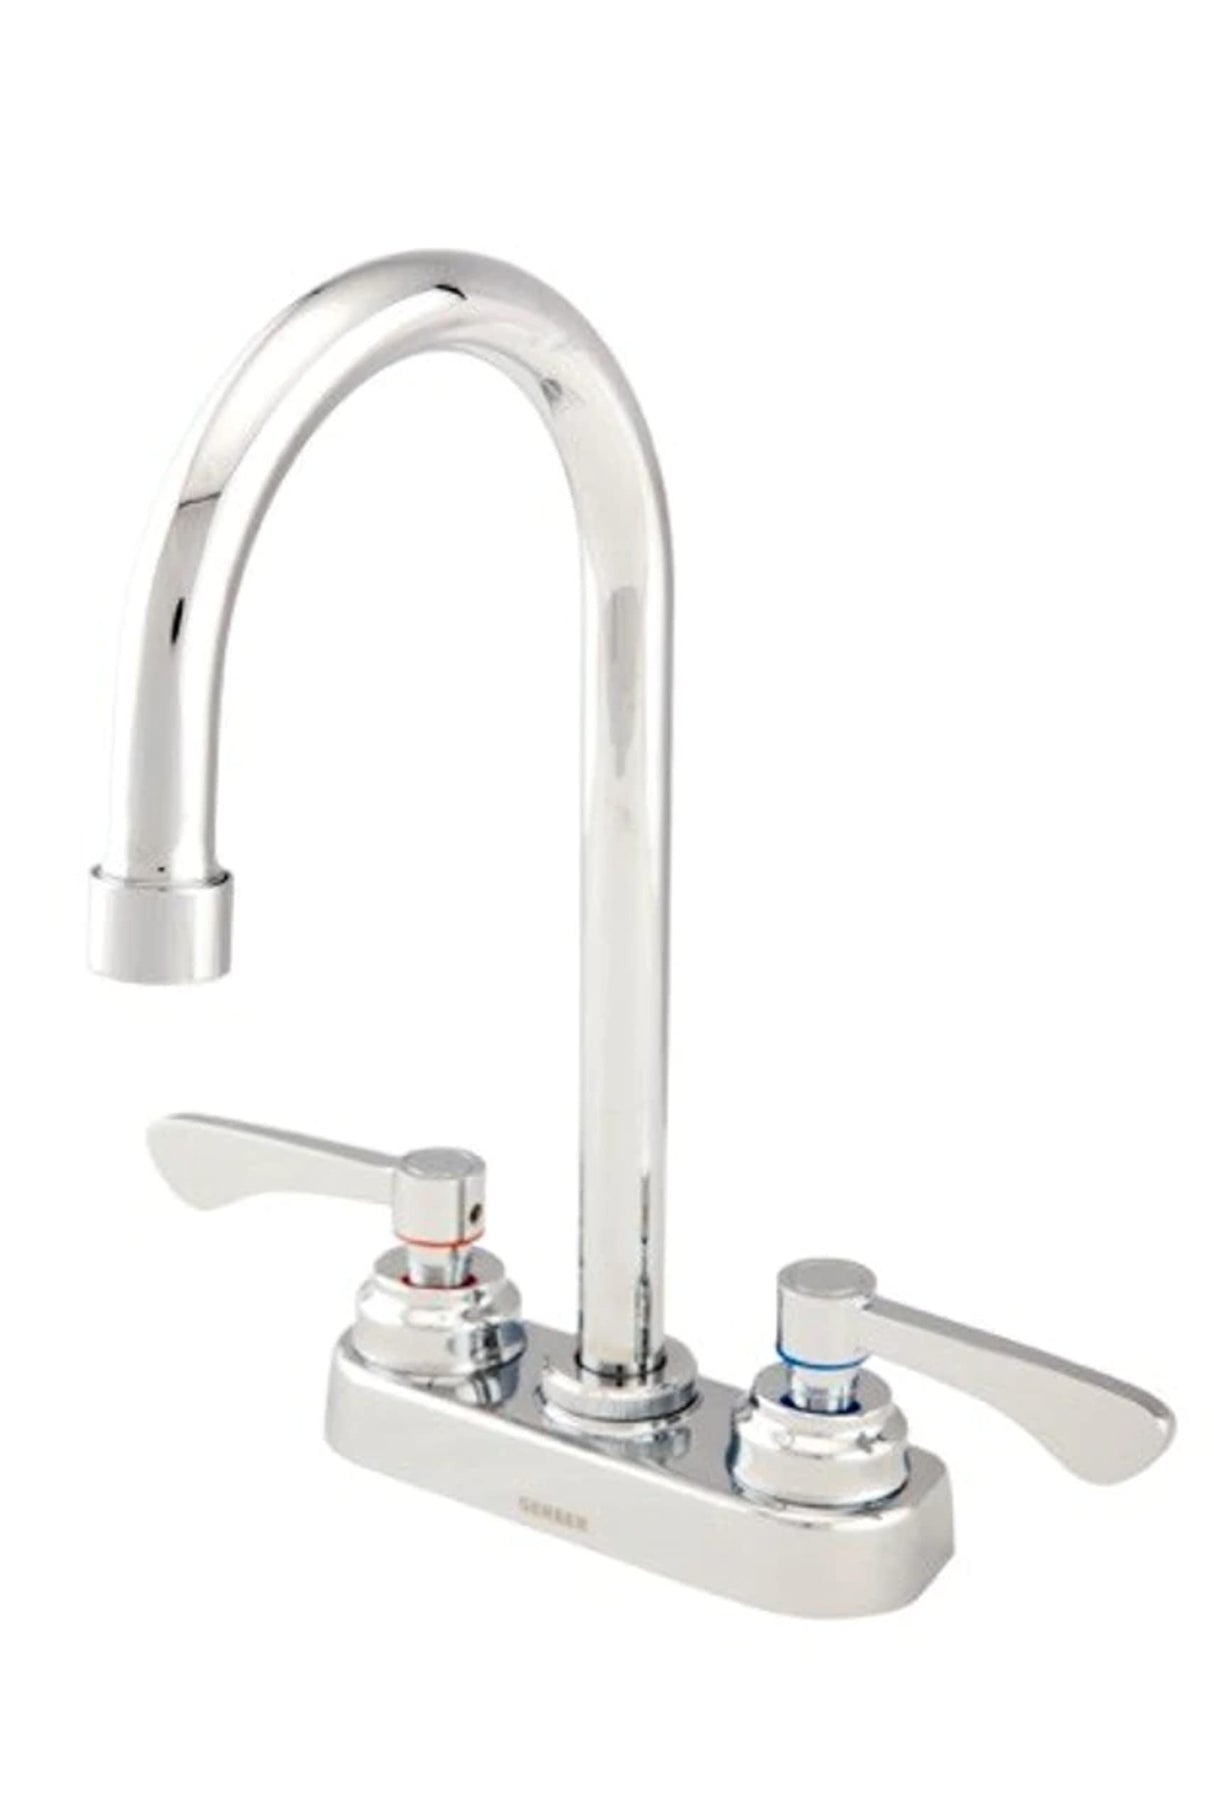 Gerber GC444554 Chrome Commercial Two Handle Centerset Lavatory Faucet W/ GOOSENECK...